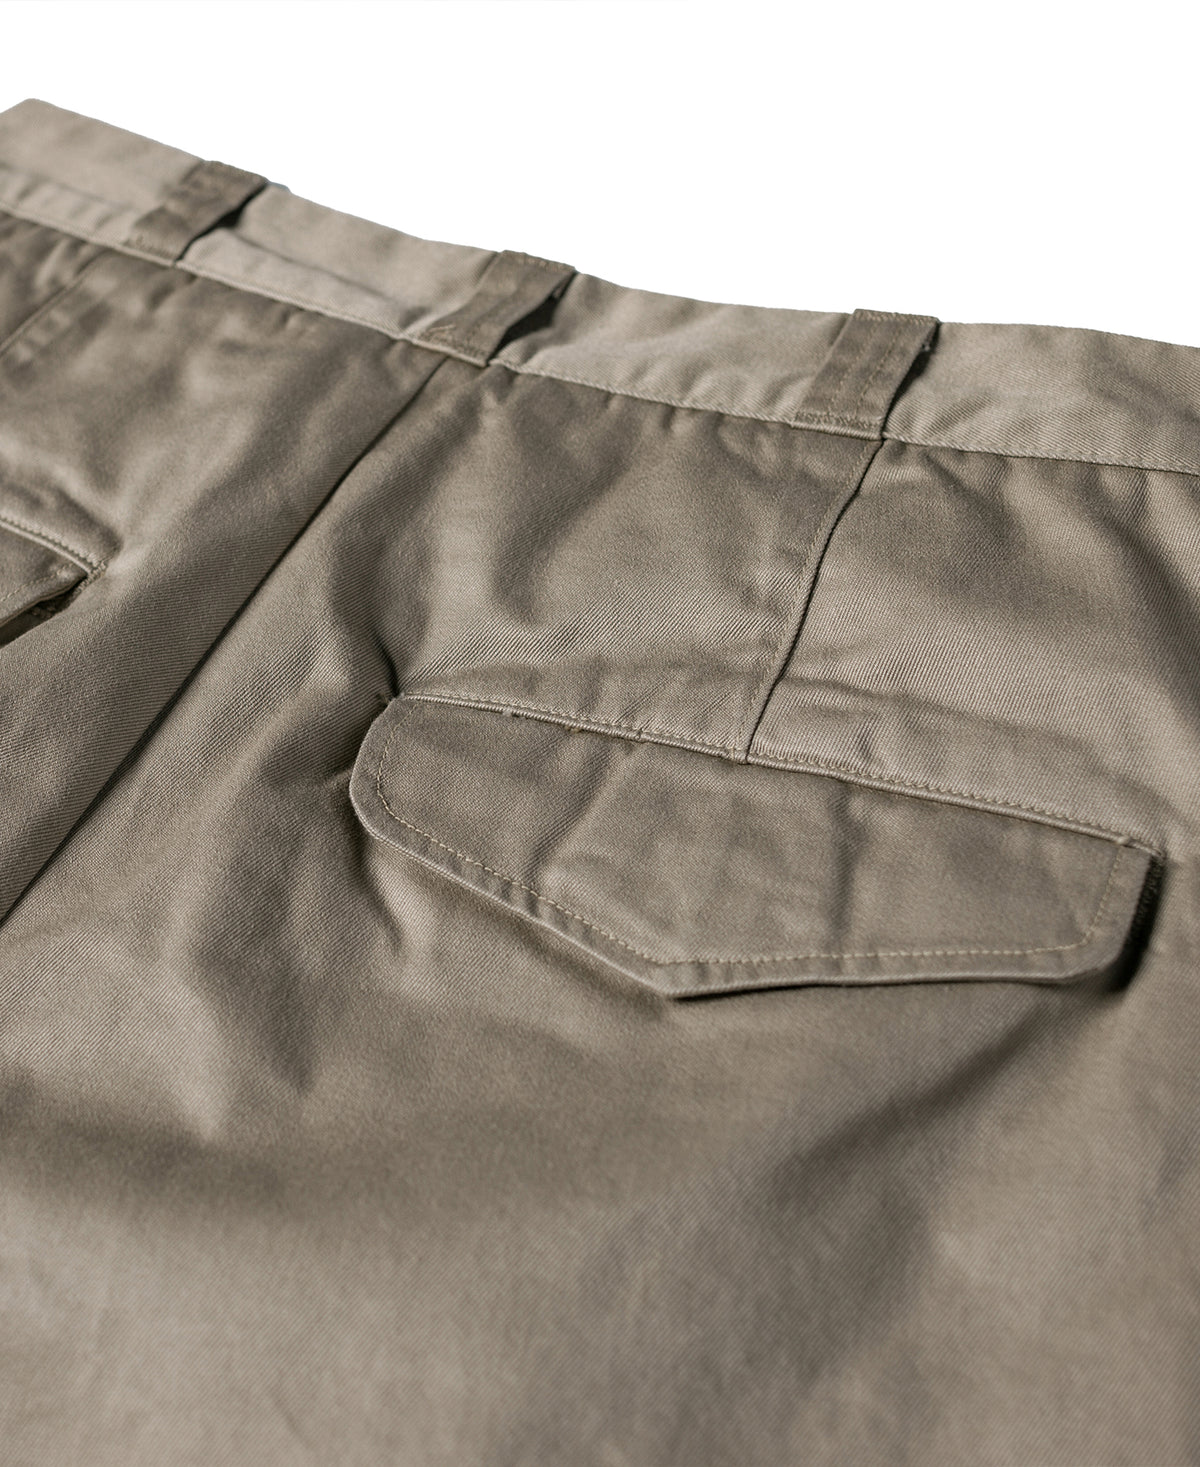 1956 USAF Khaki Shorts